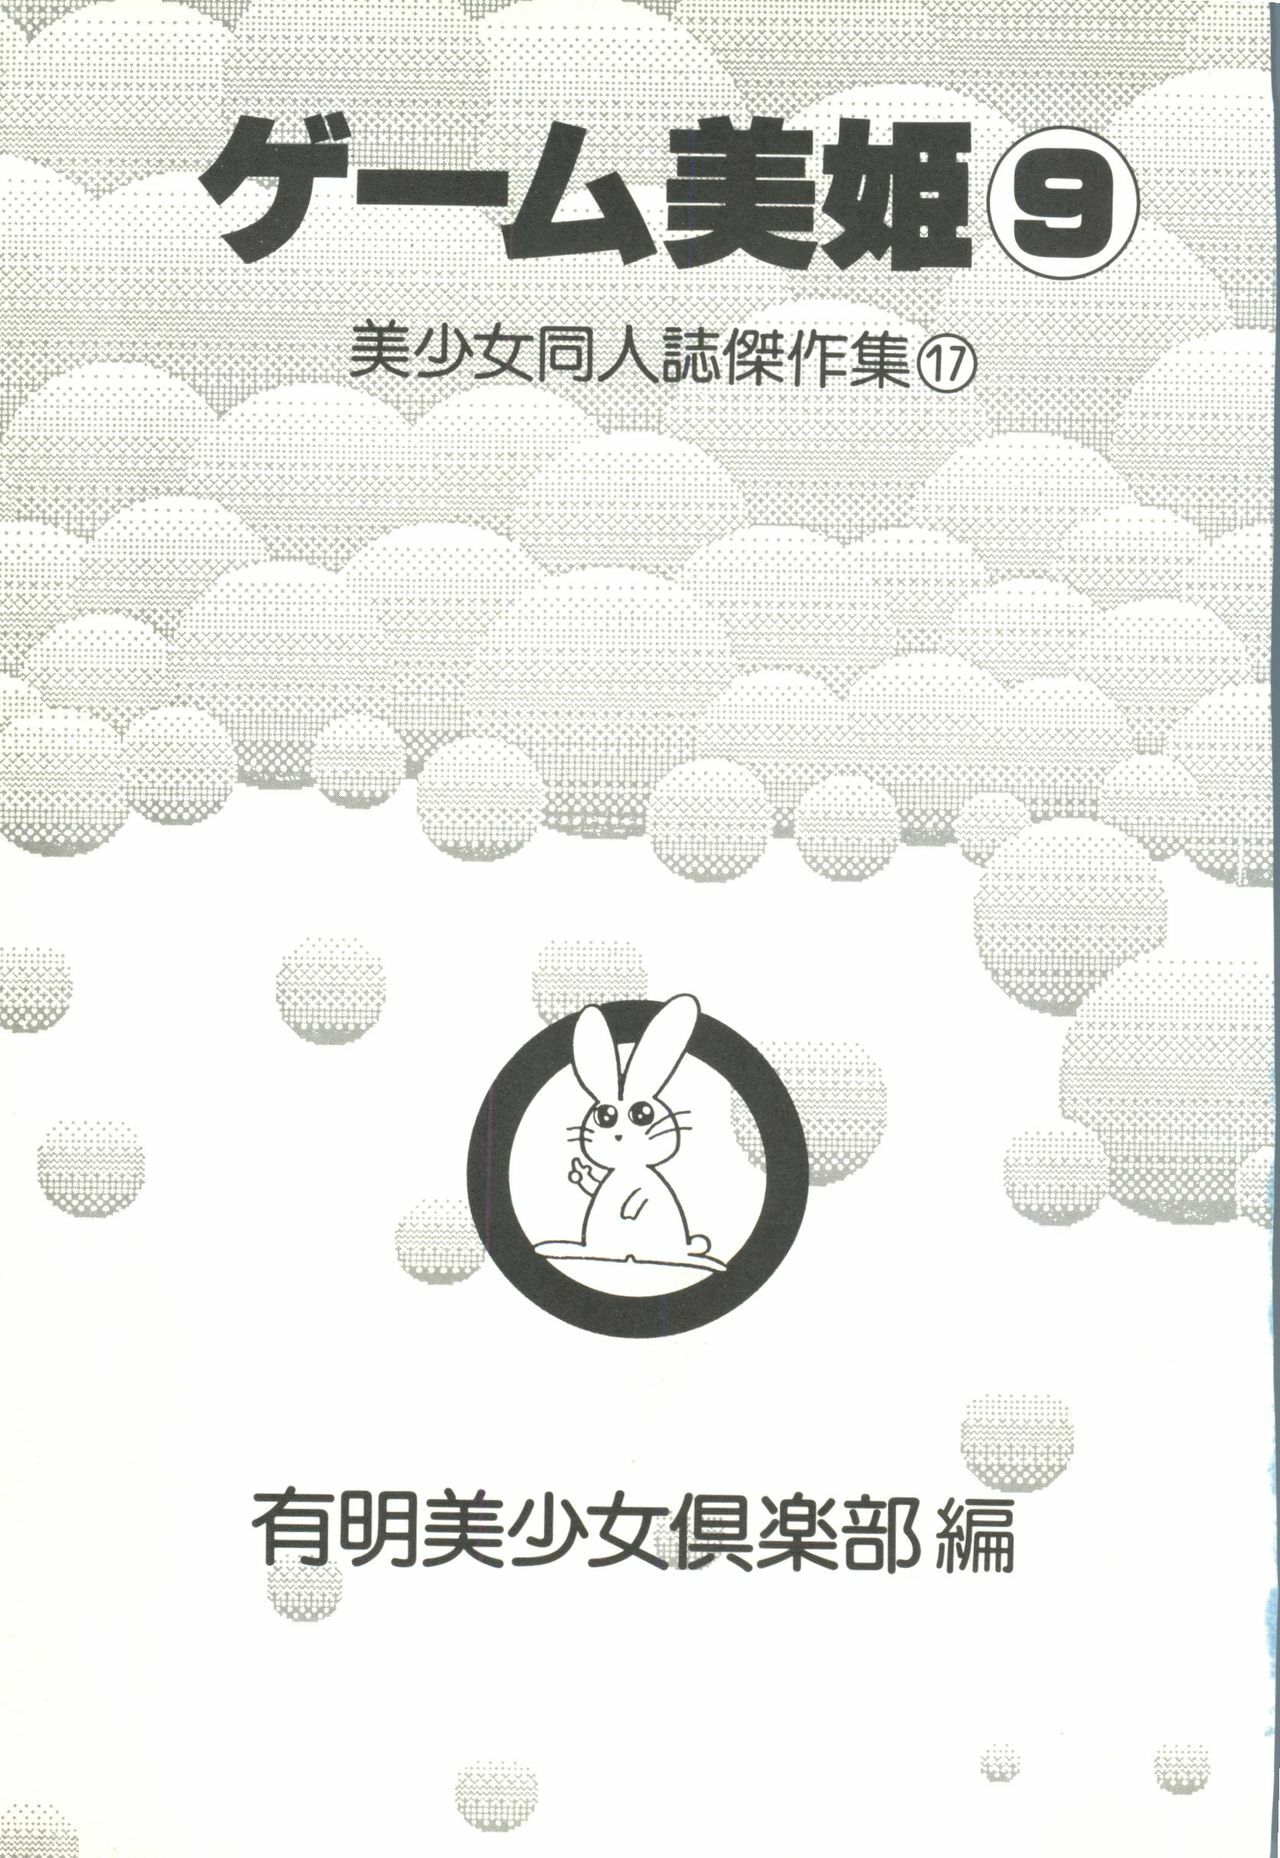 [Anthology] Game Miki 9 (Various) page 4 full